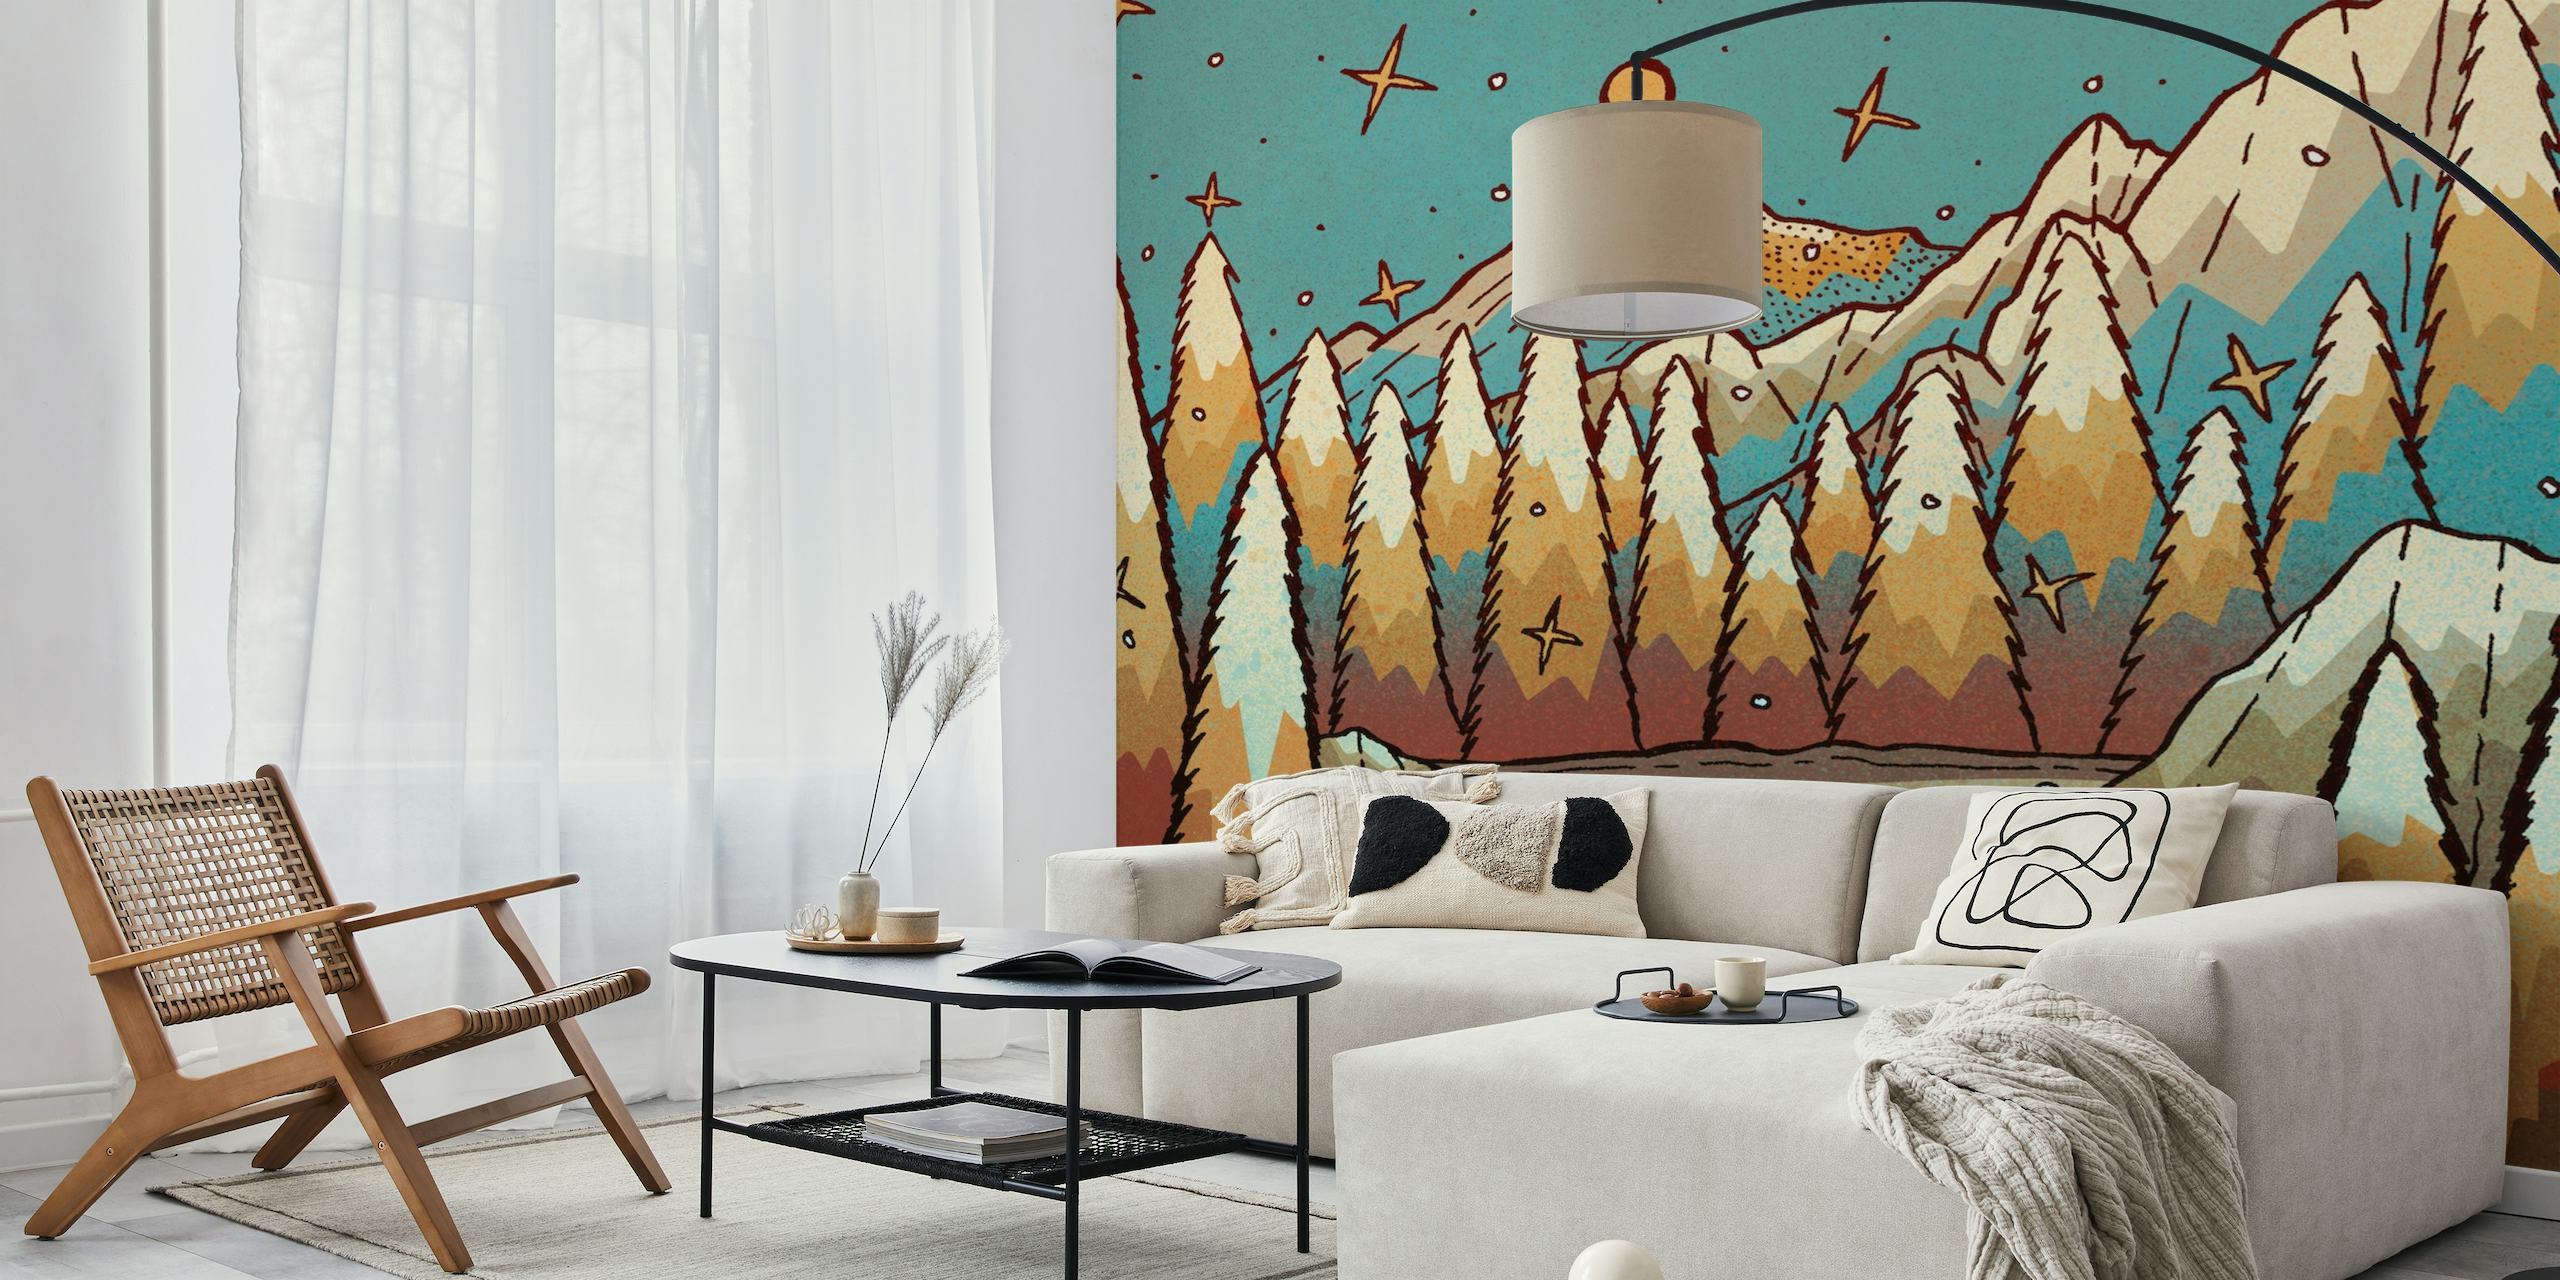 Vinter af guld og blå vægmaleri, der viser et fredfyldt bjerglandskab med ravtræer og en stjernehimmel